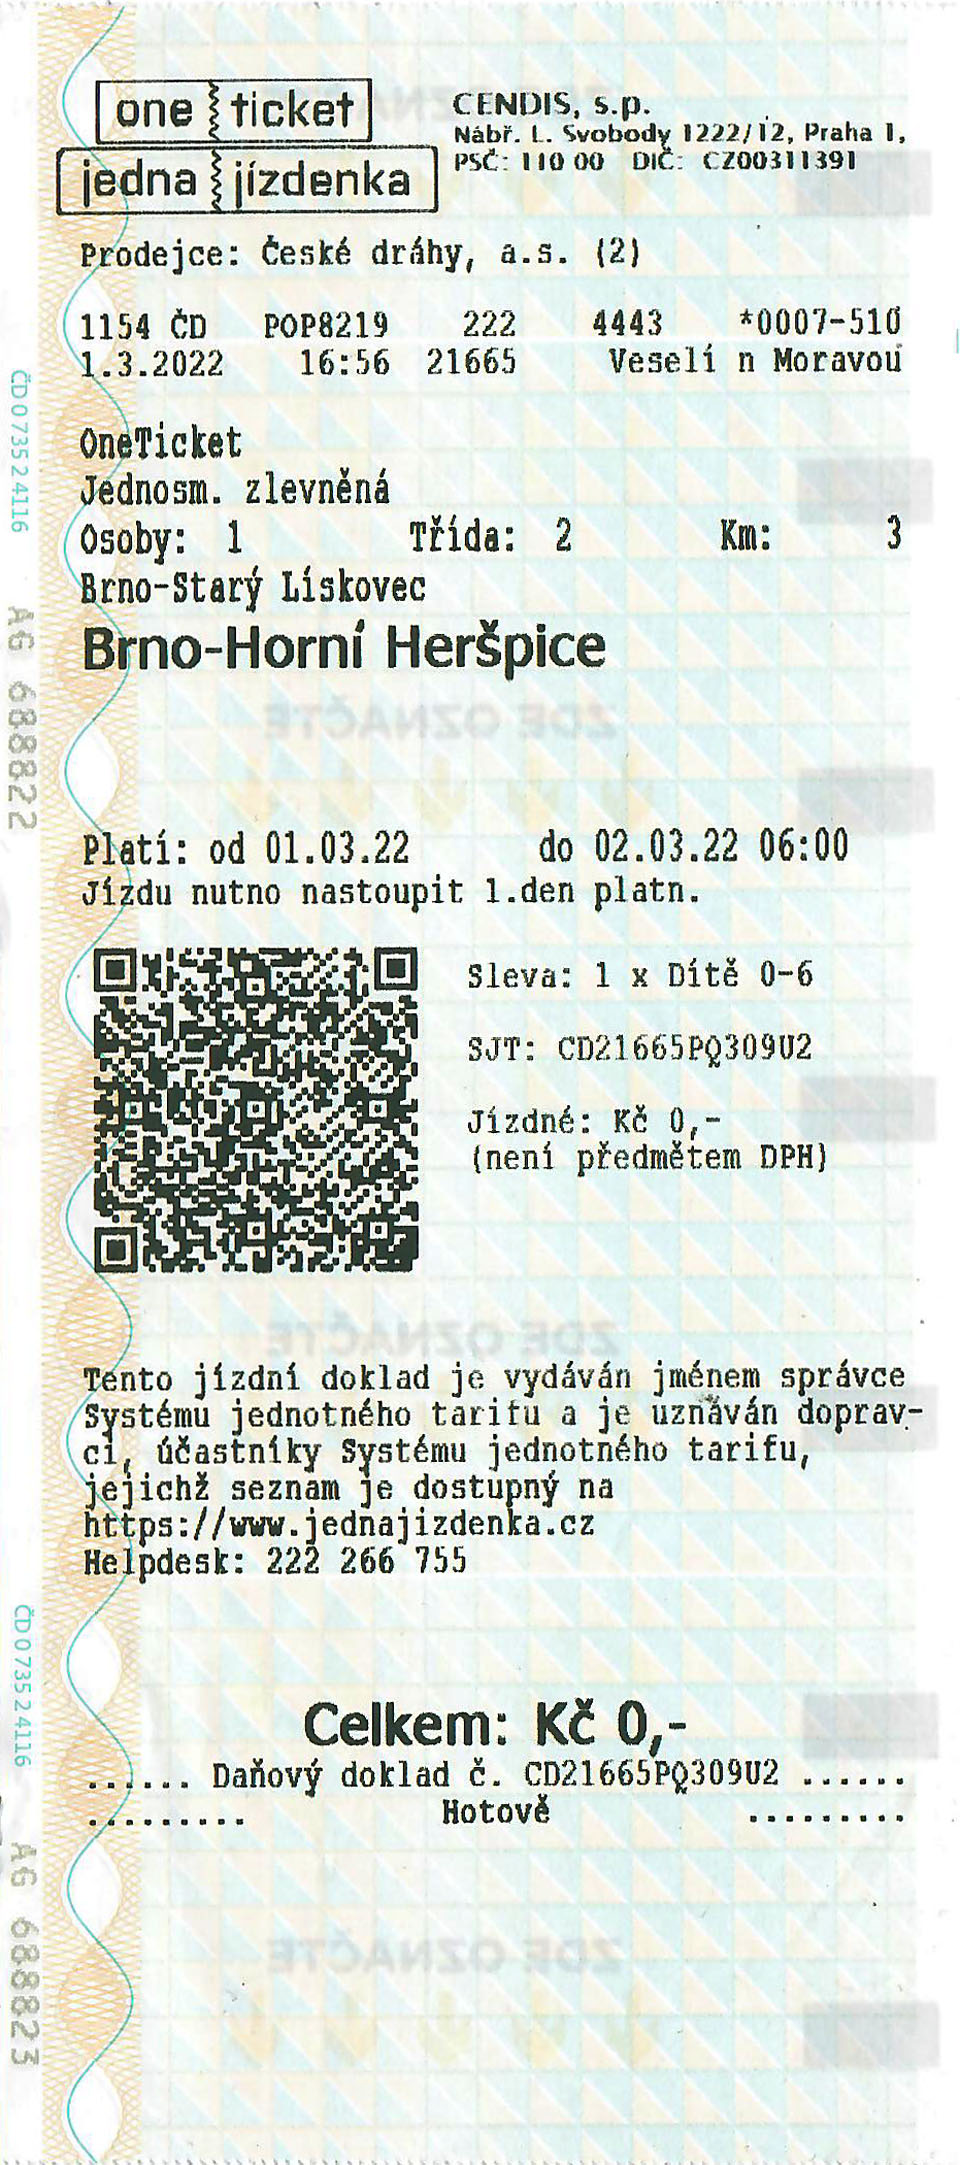 Jedna jízdenka vydaná ze zastávky Brno-Starý Lískovec do stanice Brno-Horní Heršpice.